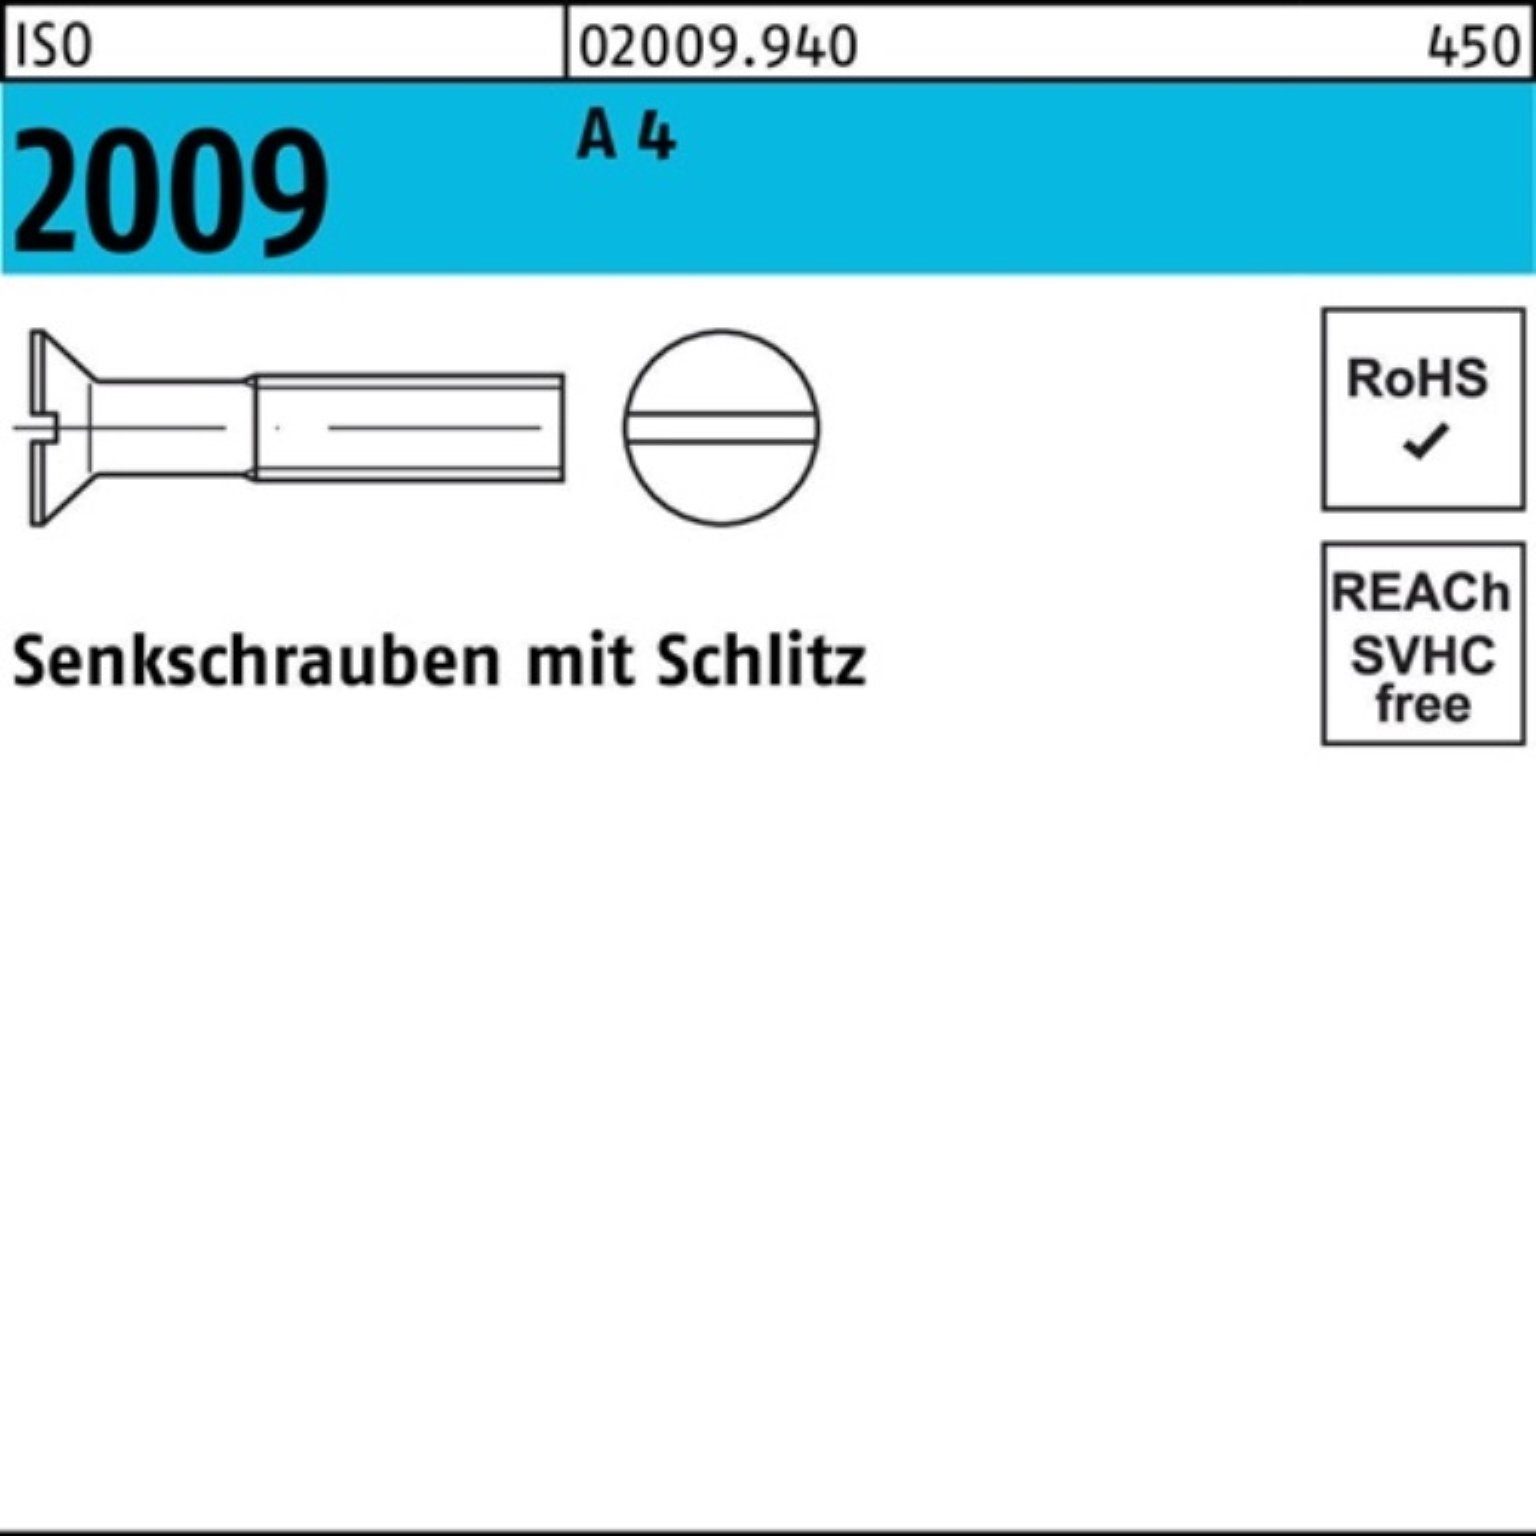 35 Stück ISO Reyher Pack 2009 Schlitz Senkschraube 100er 1 2009 A ISO Senkschraube 4 M16x